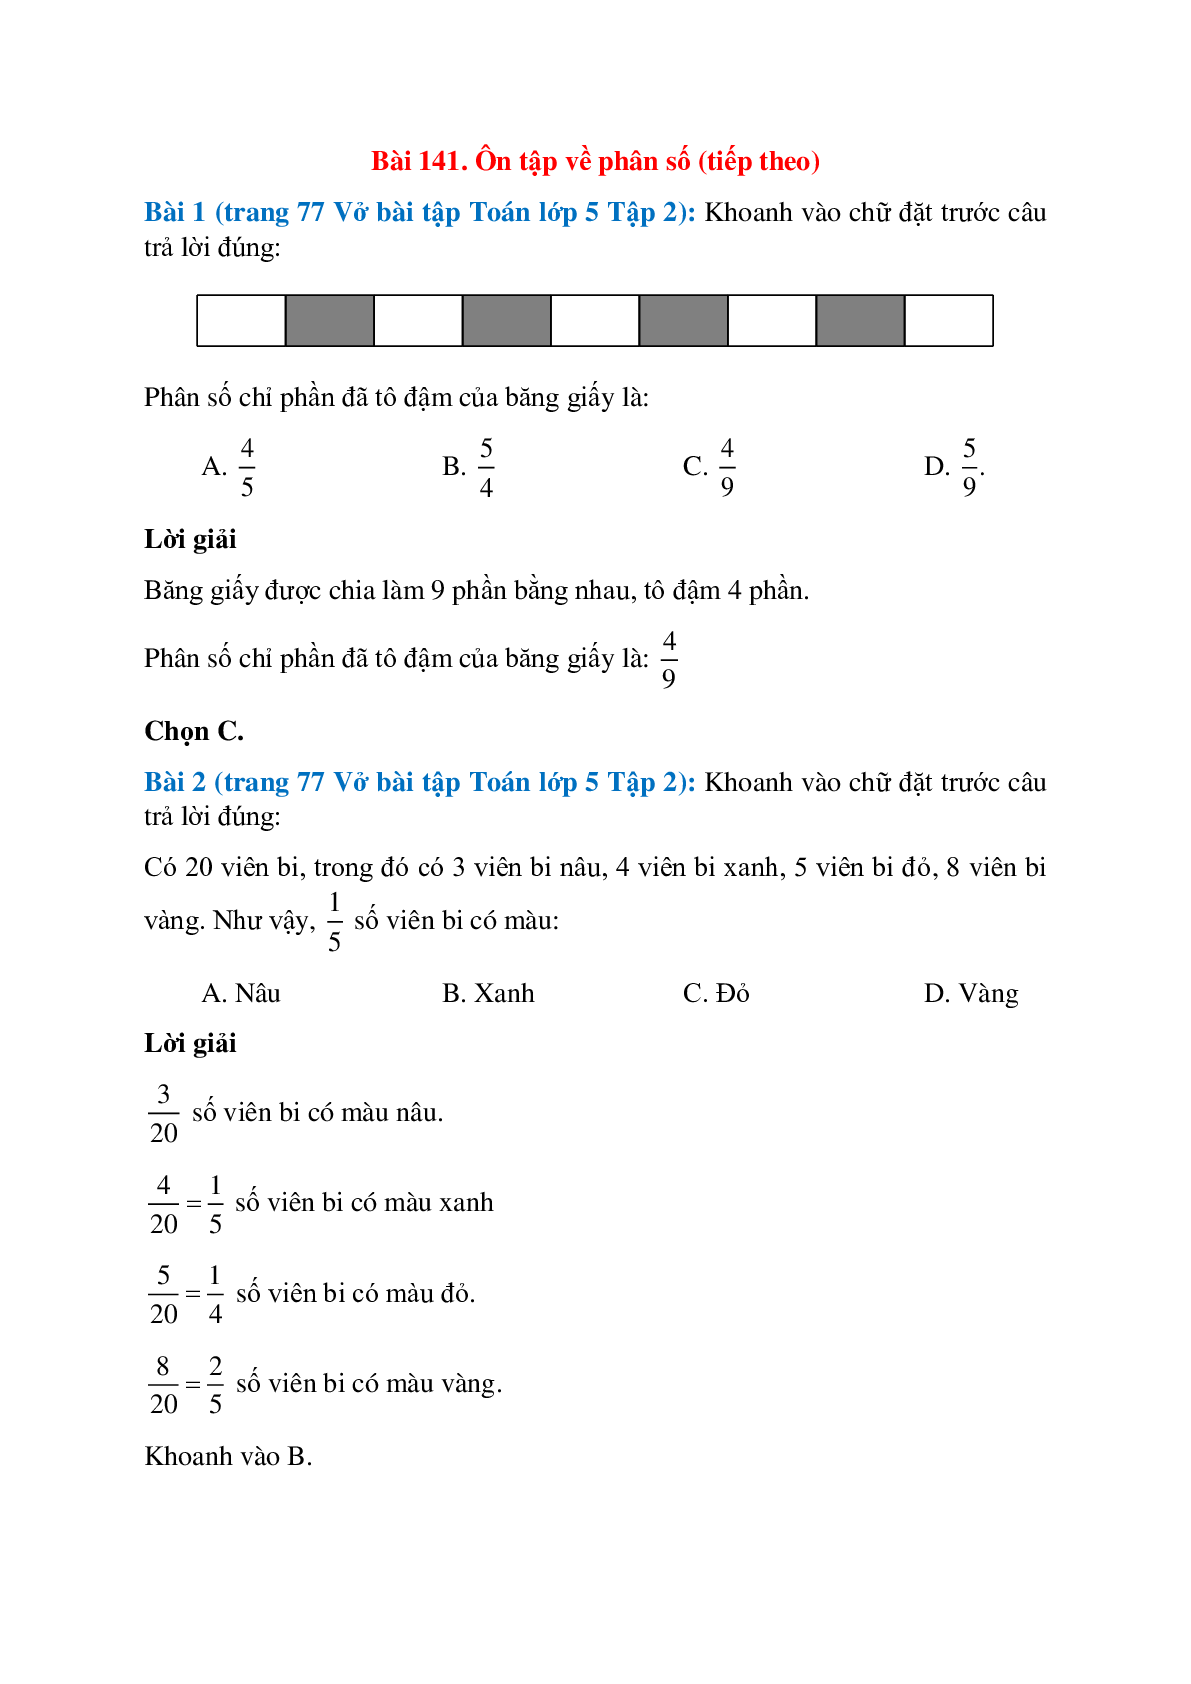 Vở bài tập Toán lớp 5 Tập 2 trang 77, 78 Bài 141: Ôn tập về phân số (tiếp theo) (trang 1)